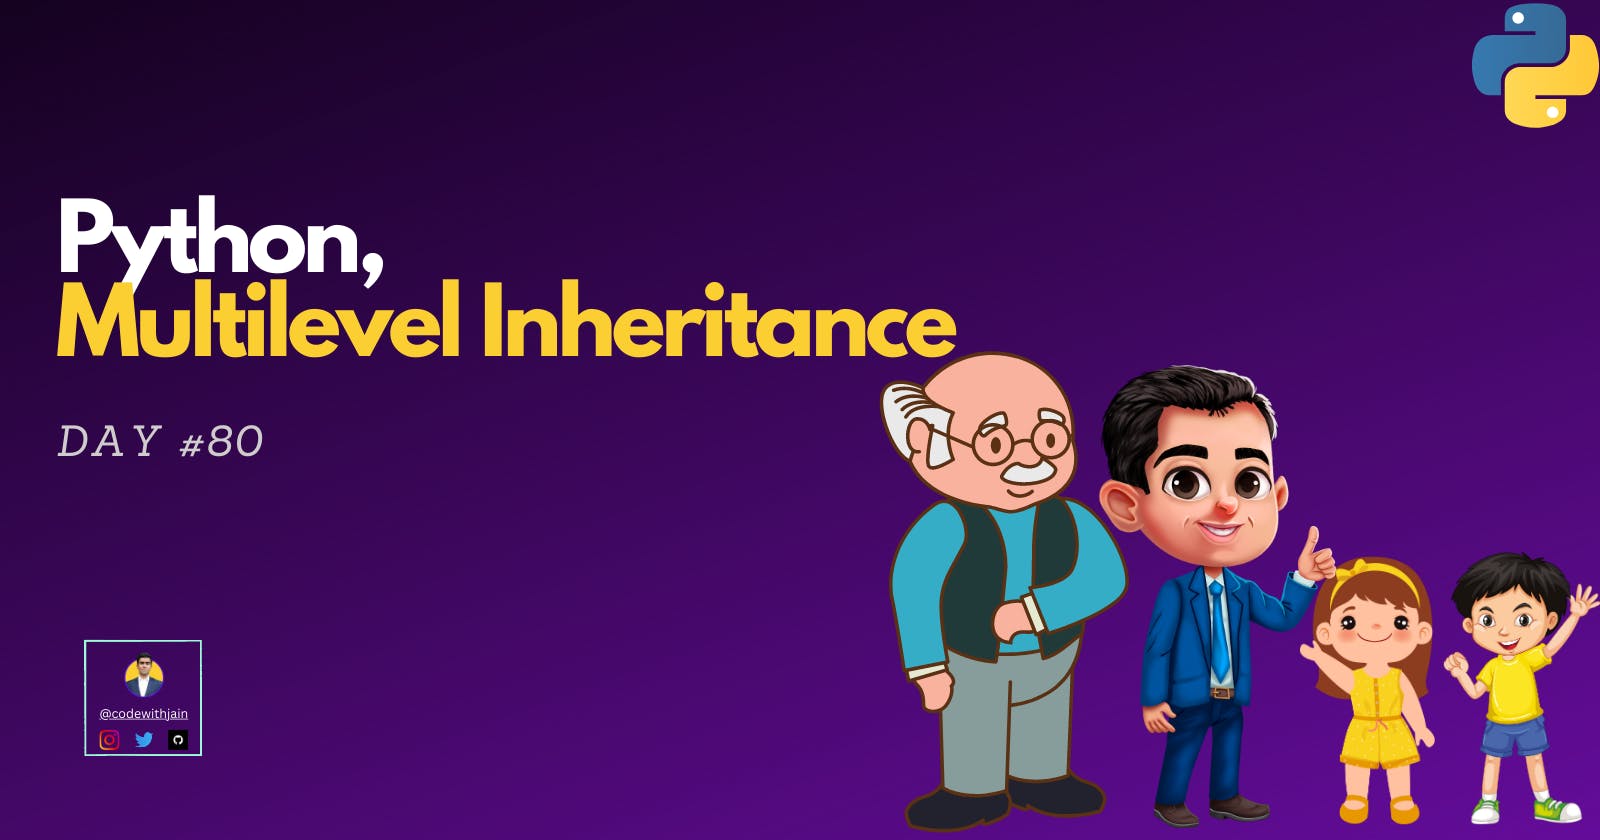 Day #80 - Multilevel Inheritance in Python